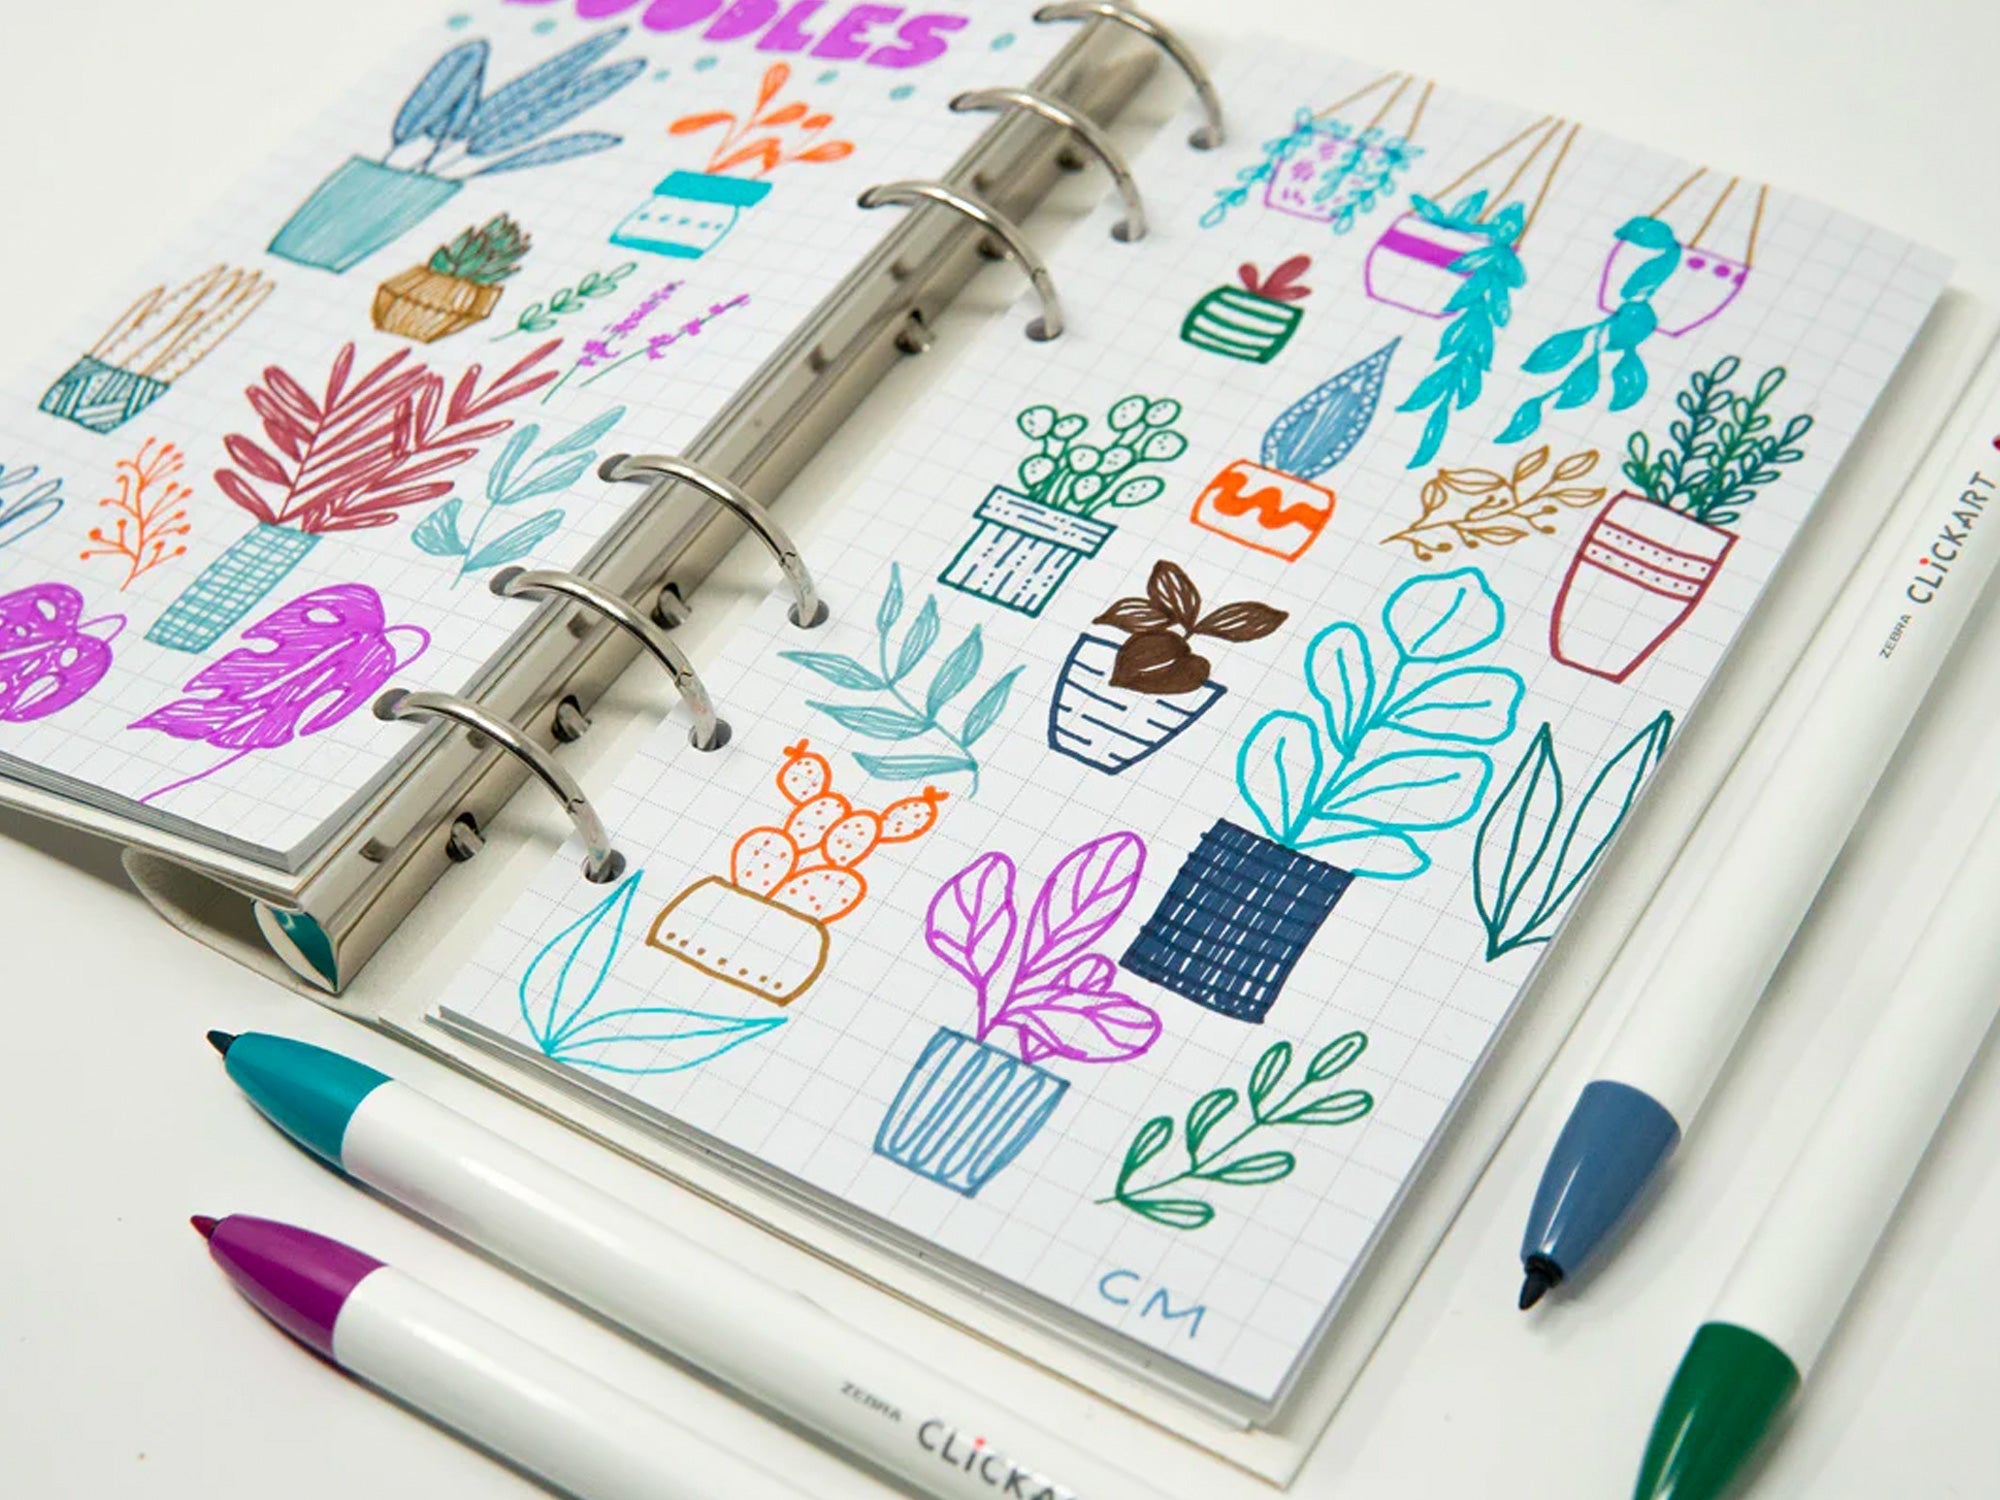 Zebra Clickart Retractable Marker Pen Lavender